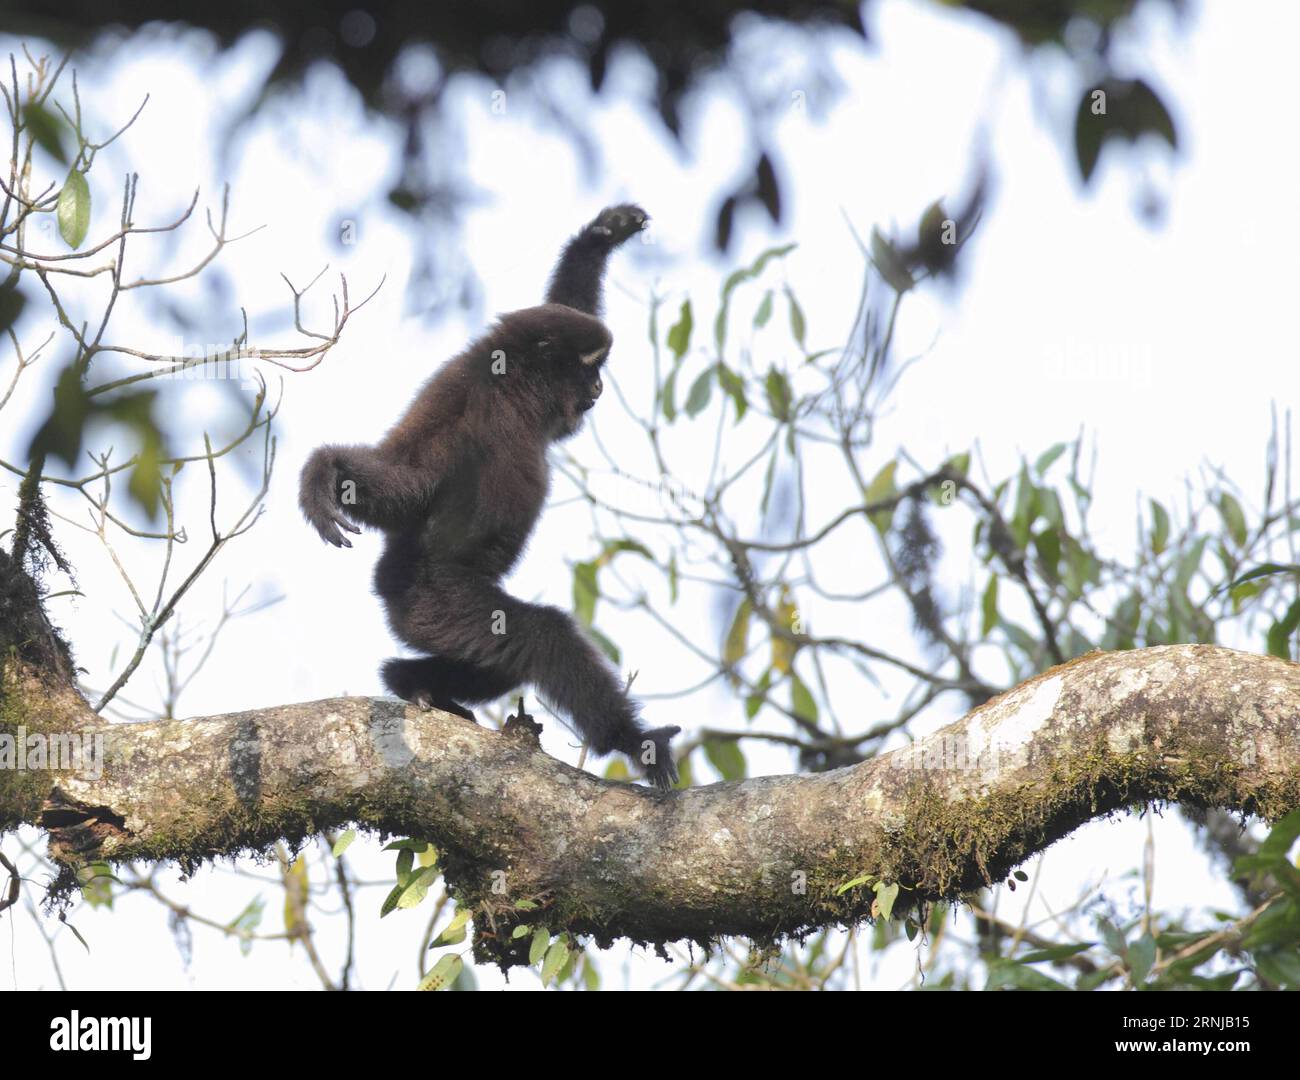 (170113) -- KUNMING, 13 gennaio 2017 -- la foto del file pubblicata da Under the Chinese Academy of Sciences mostra il gibbon bianco della montagna Gaoligong, una nuova specie di gibbon è stata scoperta nella provincia dello Yunnan della Cina sud-occidentale. La nuova specie, con sopracciglia bianche, si trova principalmente nella montagna Gaoligong nello Yunnan, ed è morfologicamente e geneticamente distinta dalle altre specie, secondo un documento di ricerca pubblicato sul sito web dell'American Journal of Primatology. I gibboni e i siamang sono piccole scimmie che abitano l'Asia meridionale, orientale e sud-orientale. La nuova specie aumenta l'intorpidimento Foto Stock